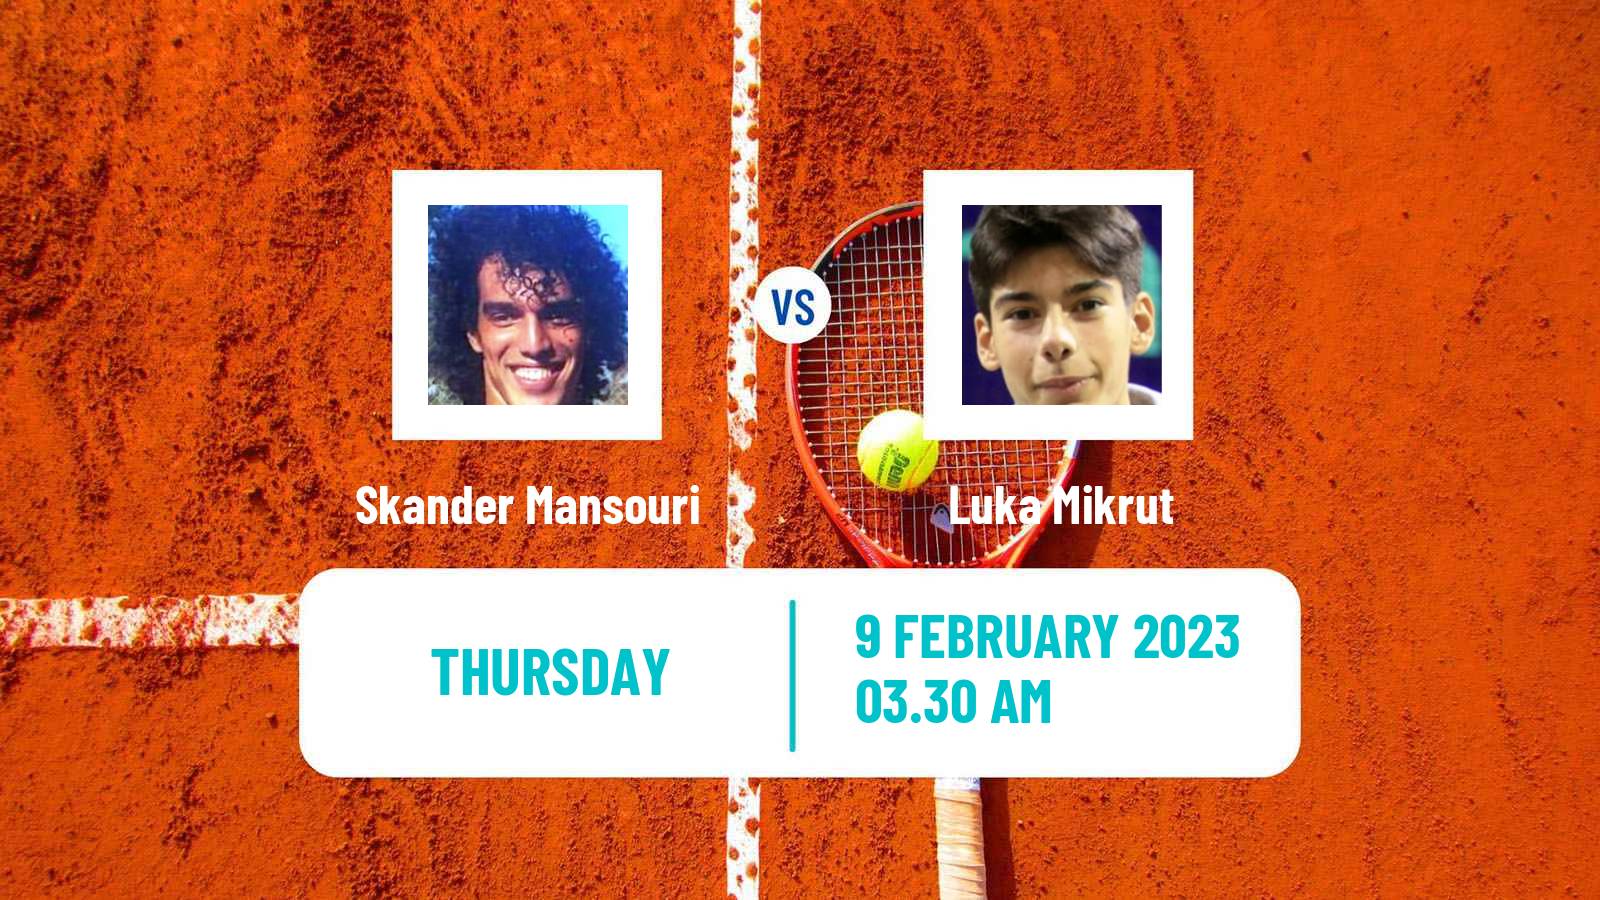 Tennis ITF Tournaments Skander Mansouri - Luka Mikrut